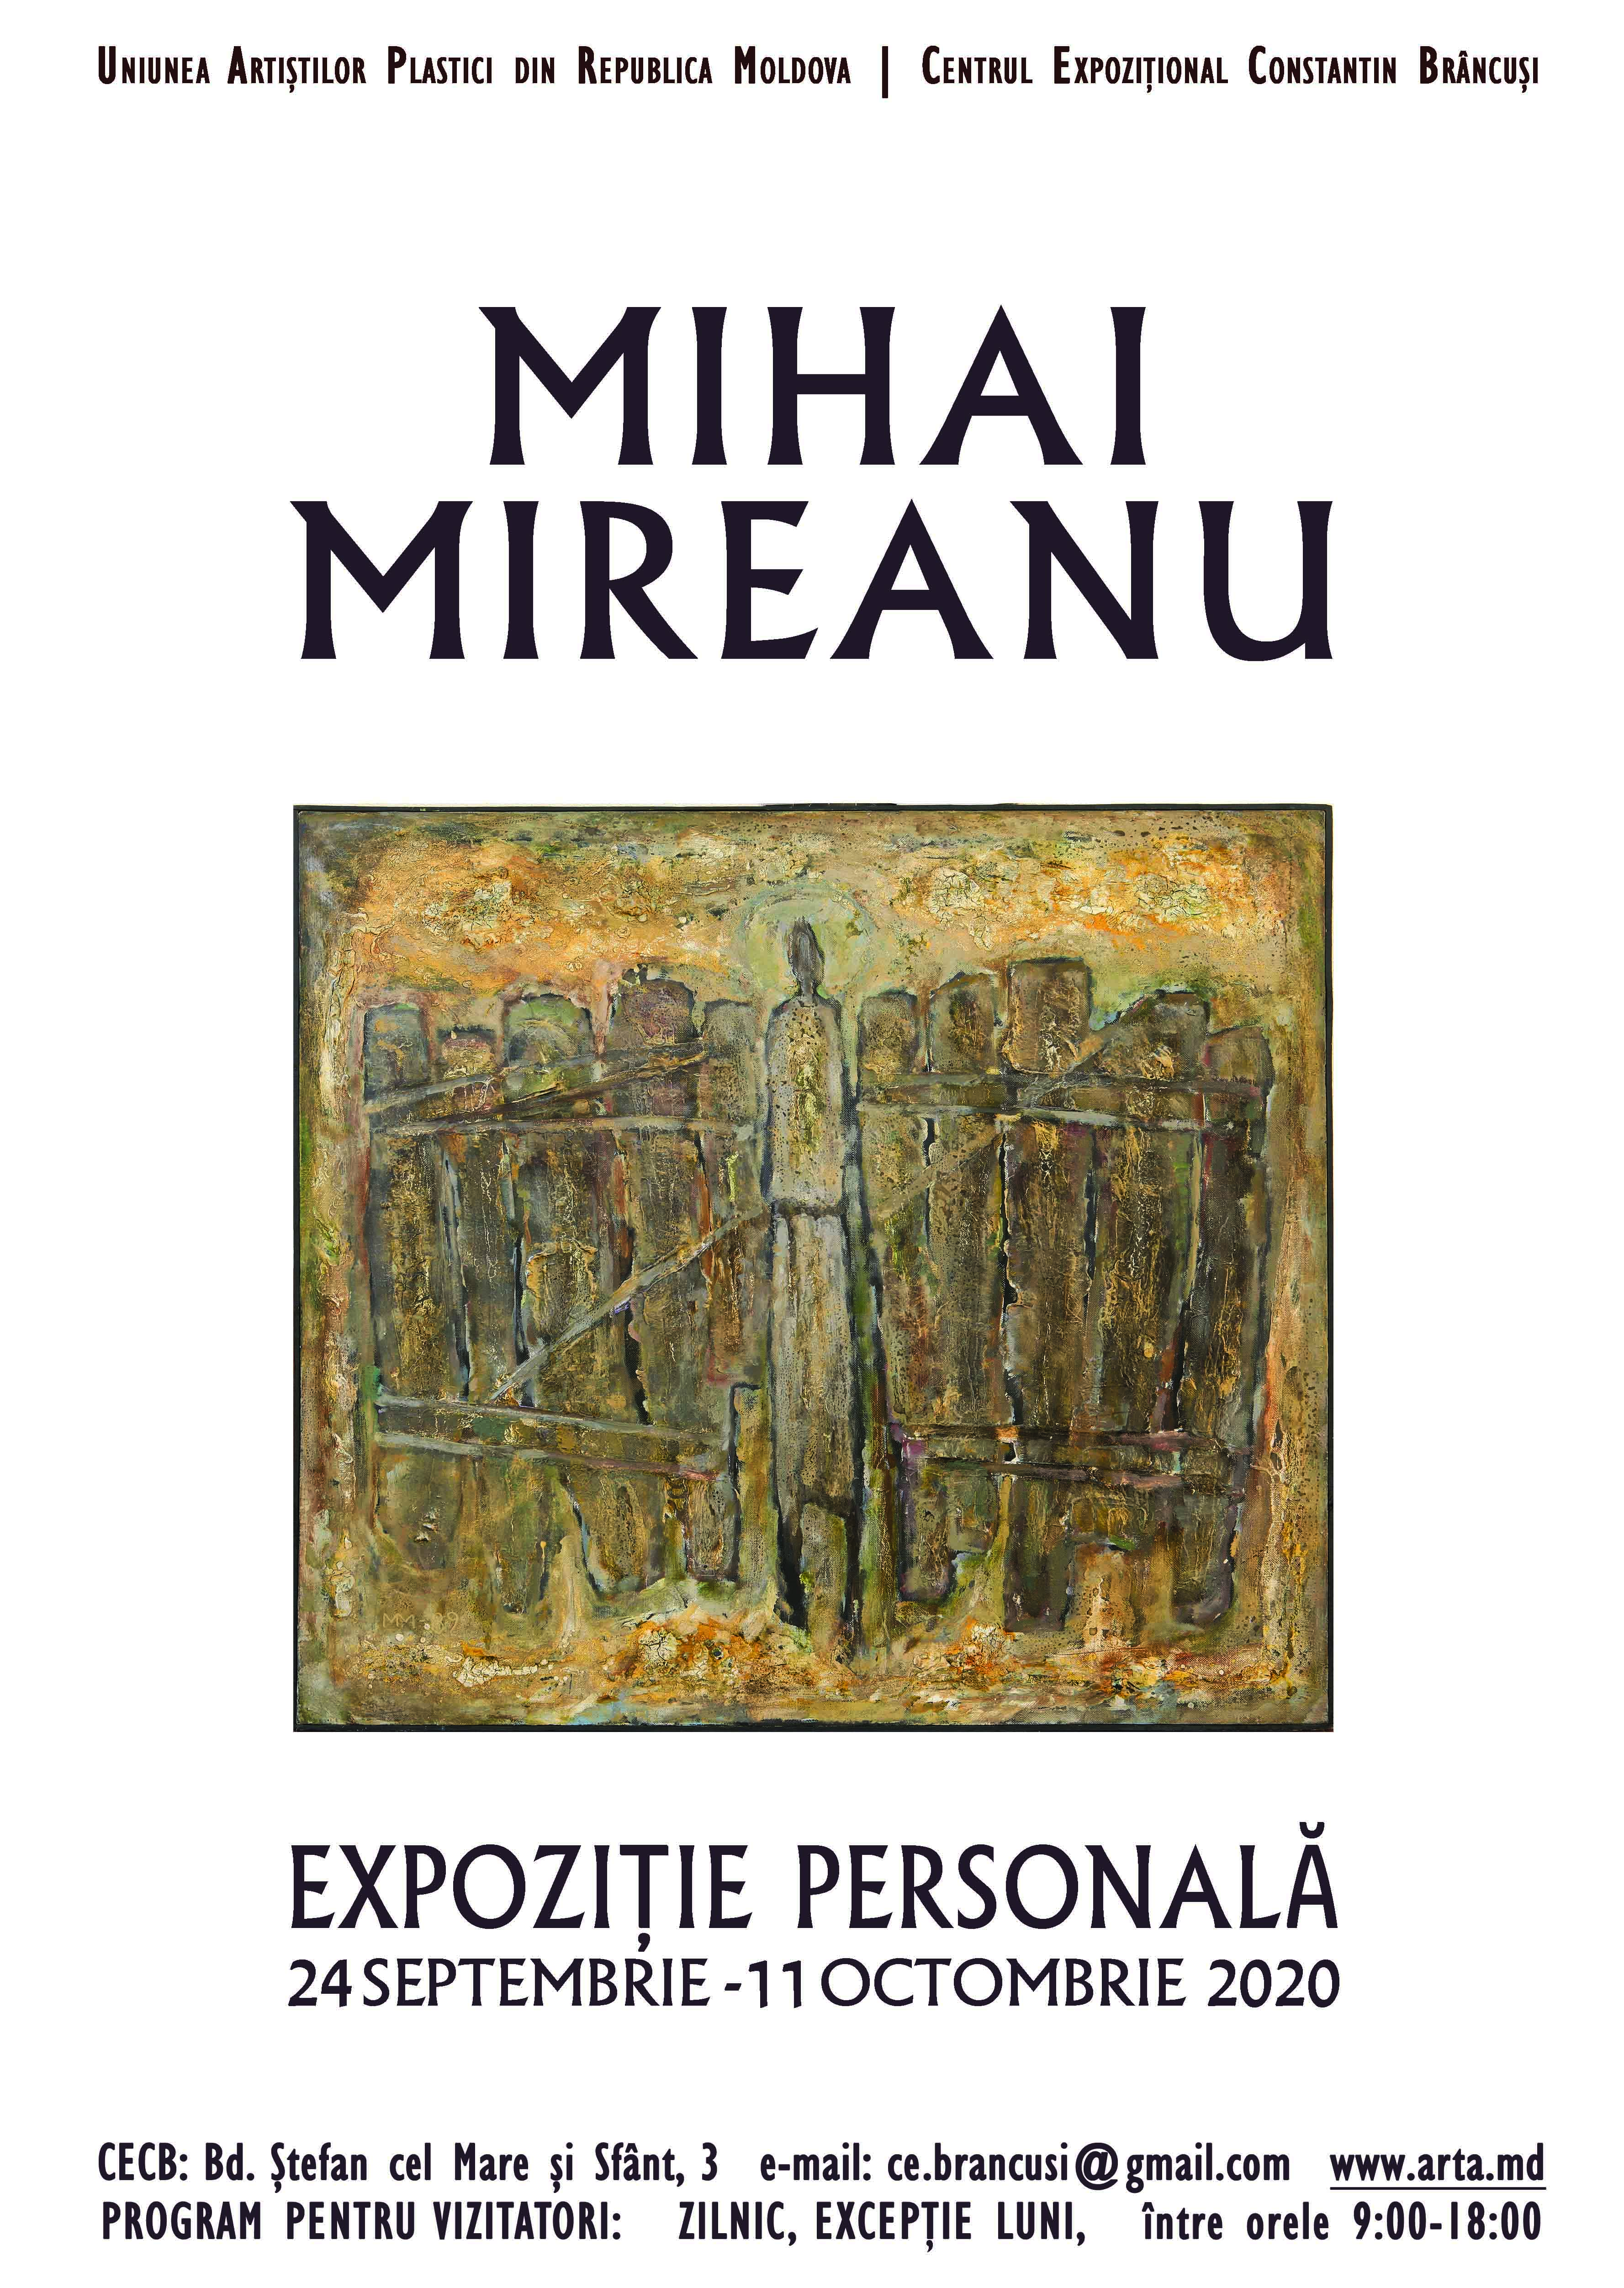 Mihai Mireanu